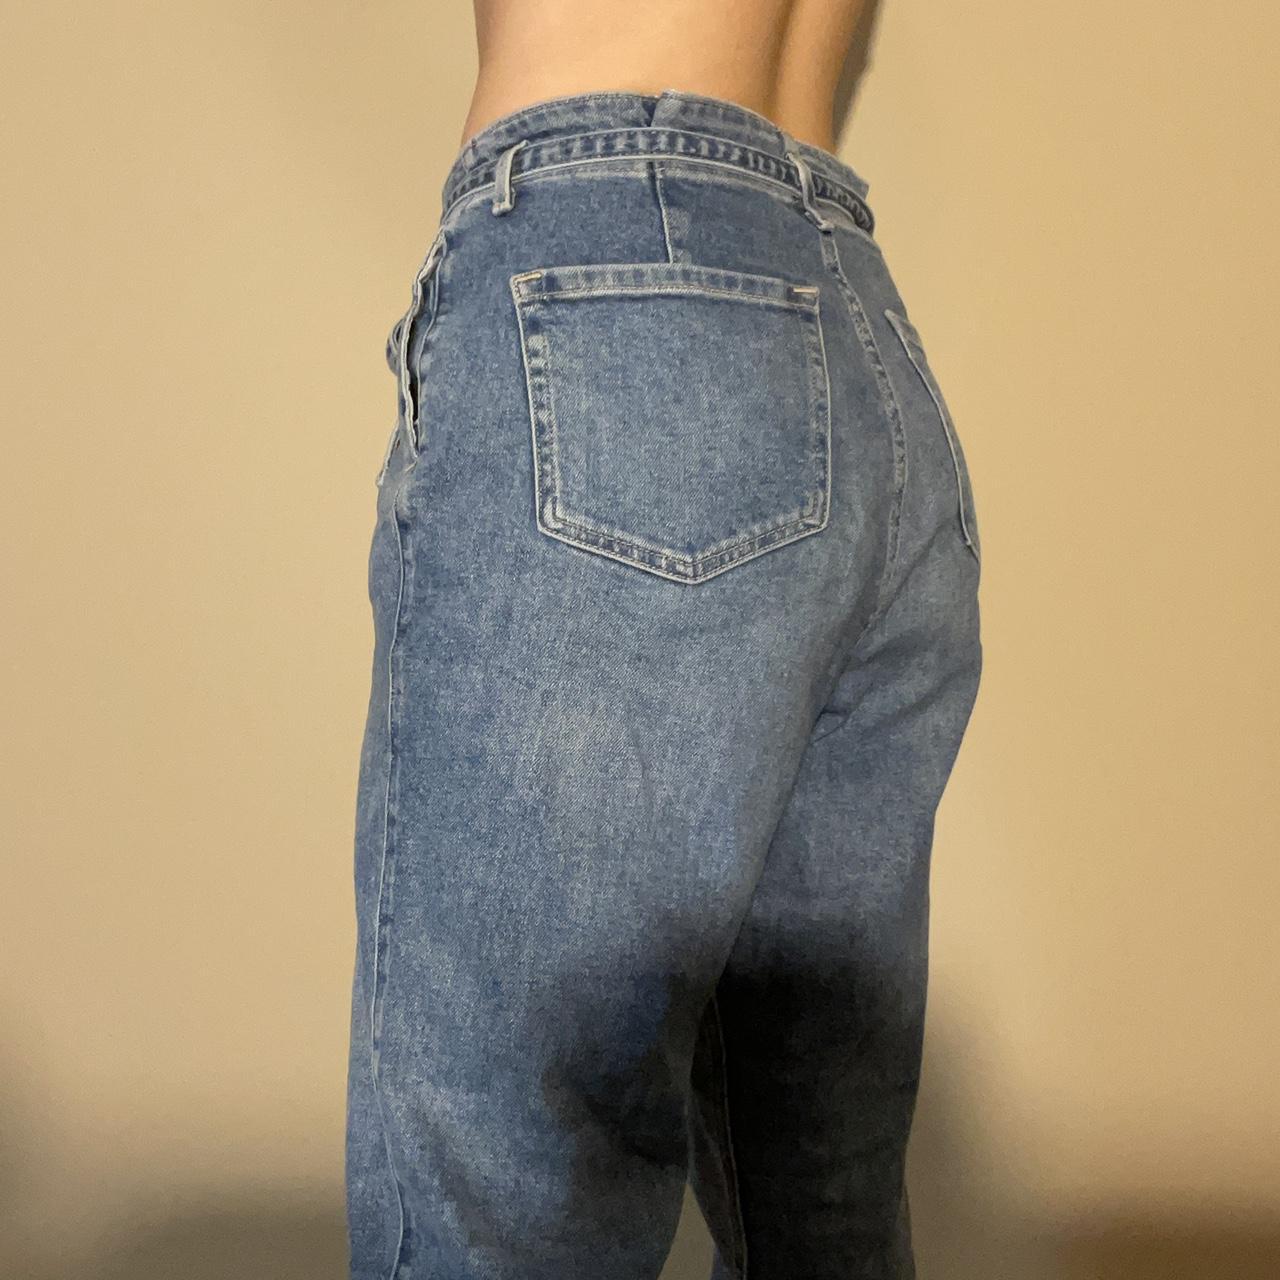 Hollister mom jeans with adjustable built-in denim - Depop